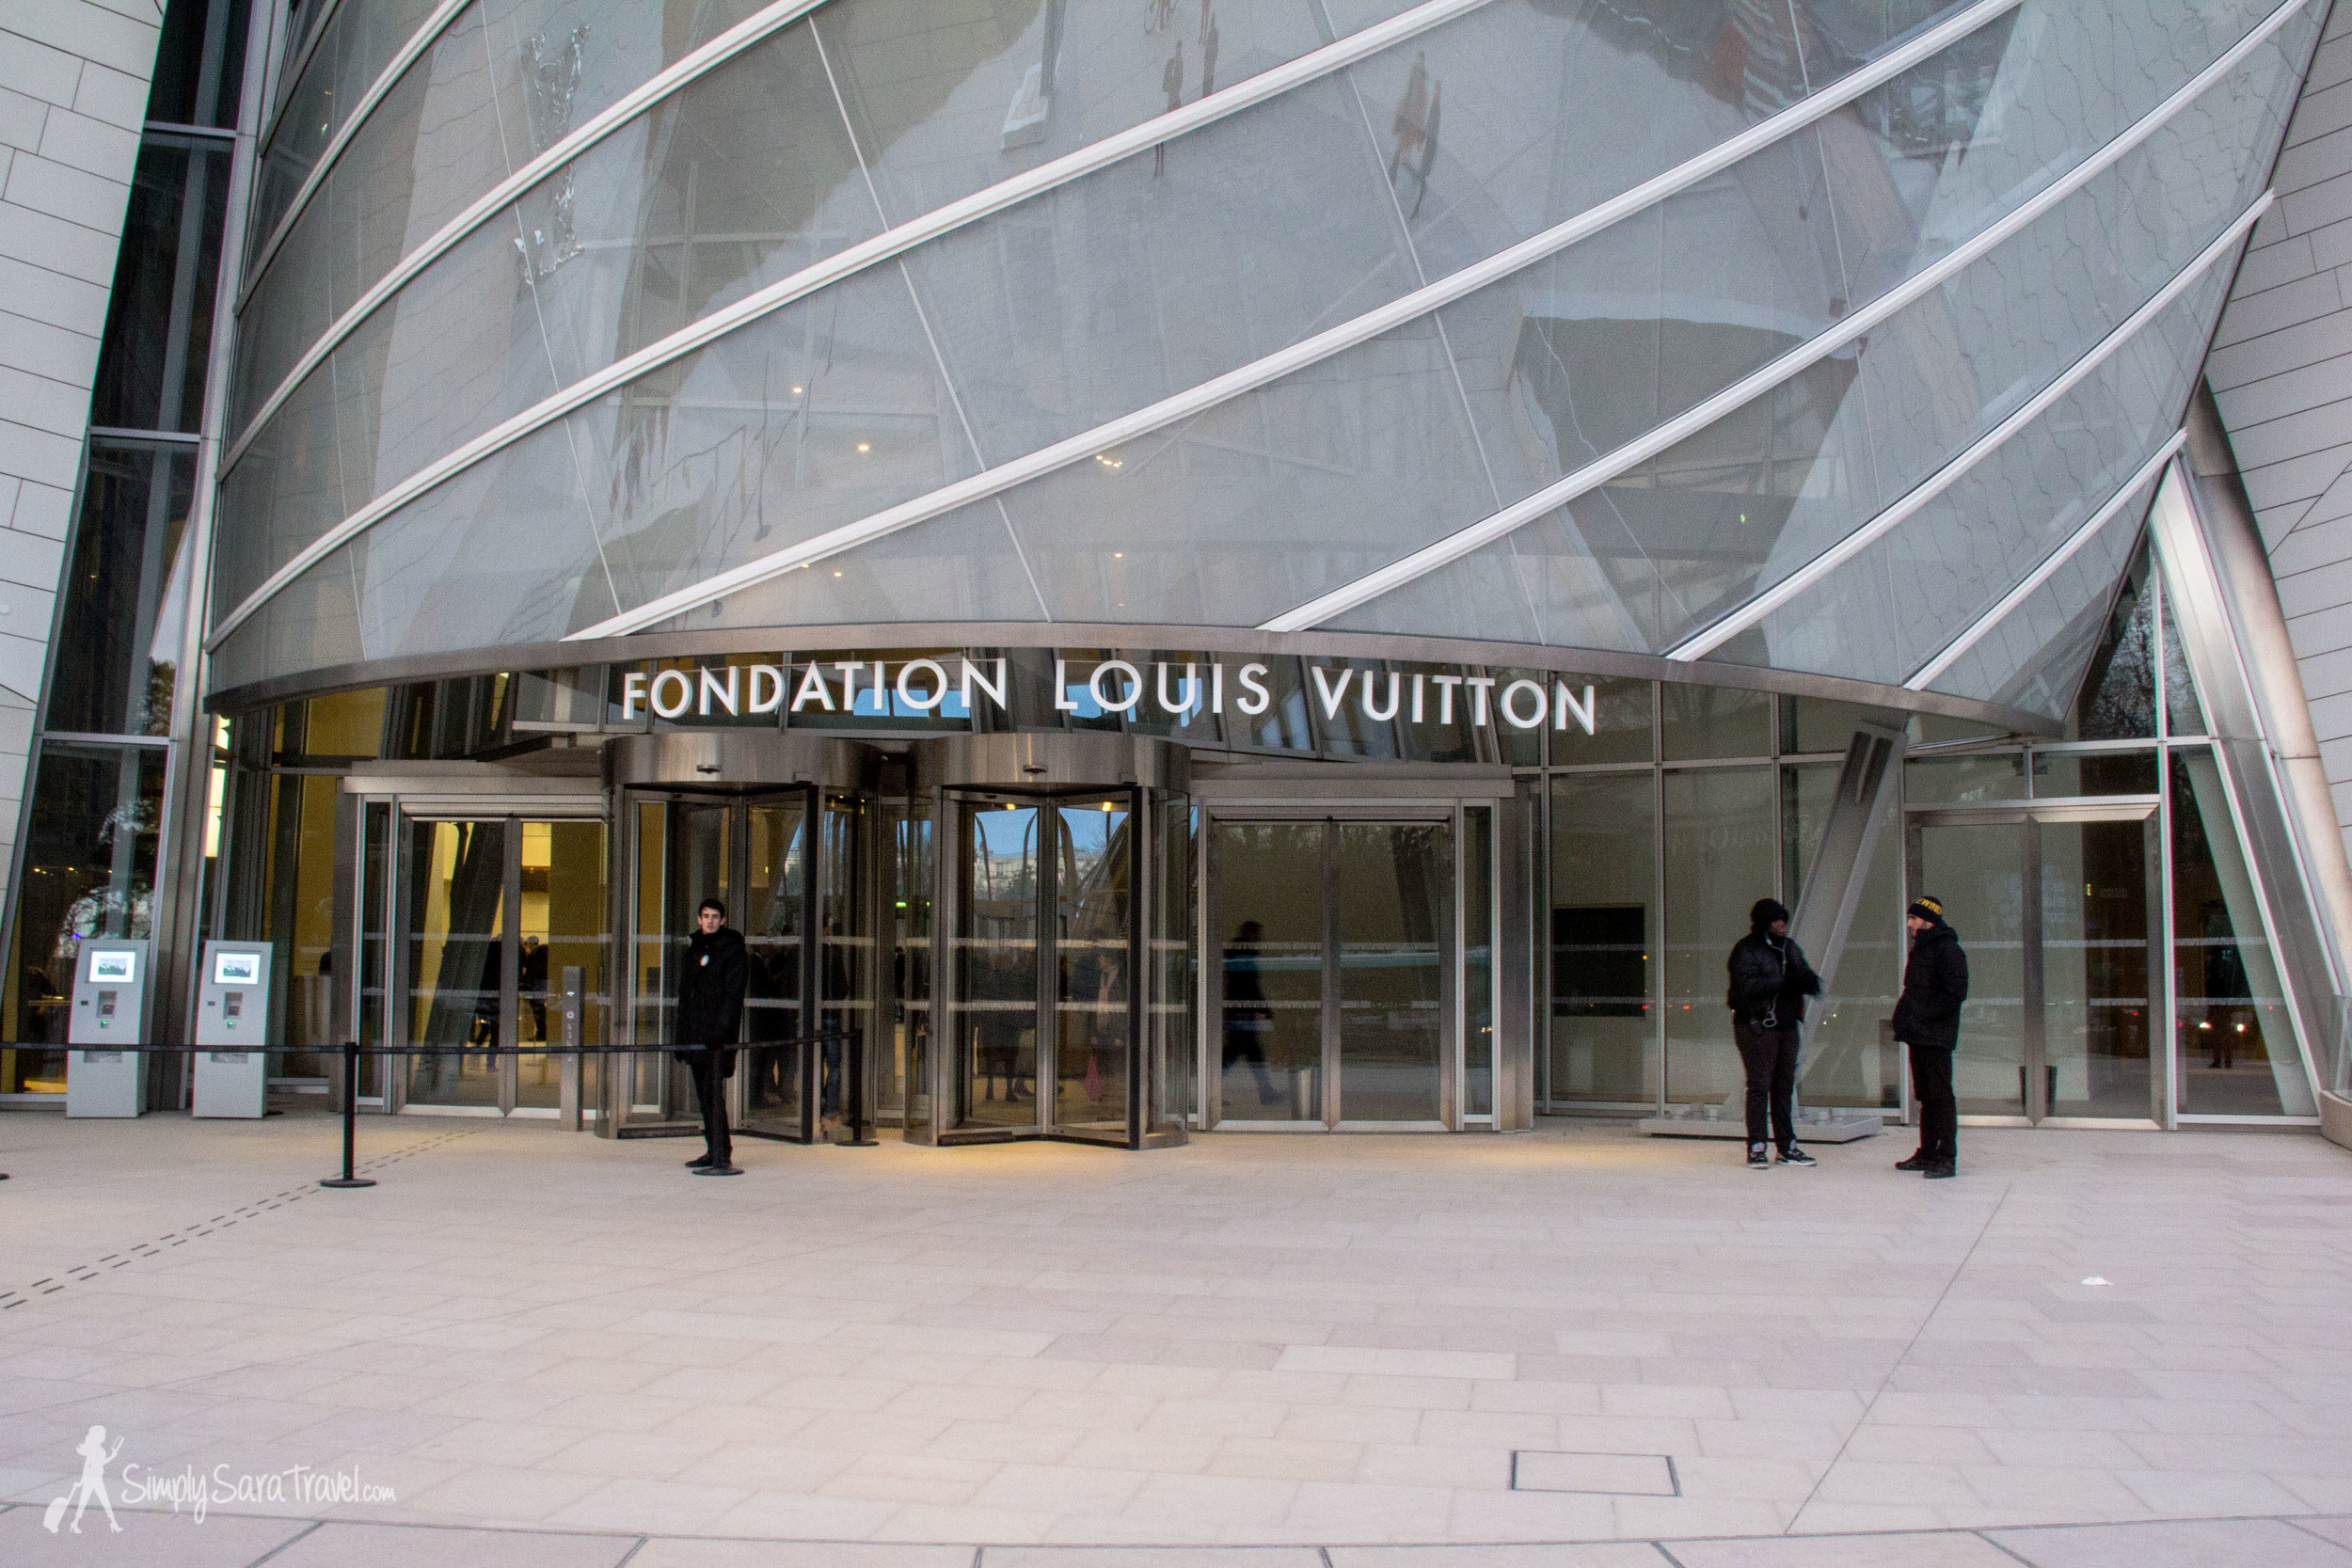 Visit the Fondation - Fondation Louis Vuitton